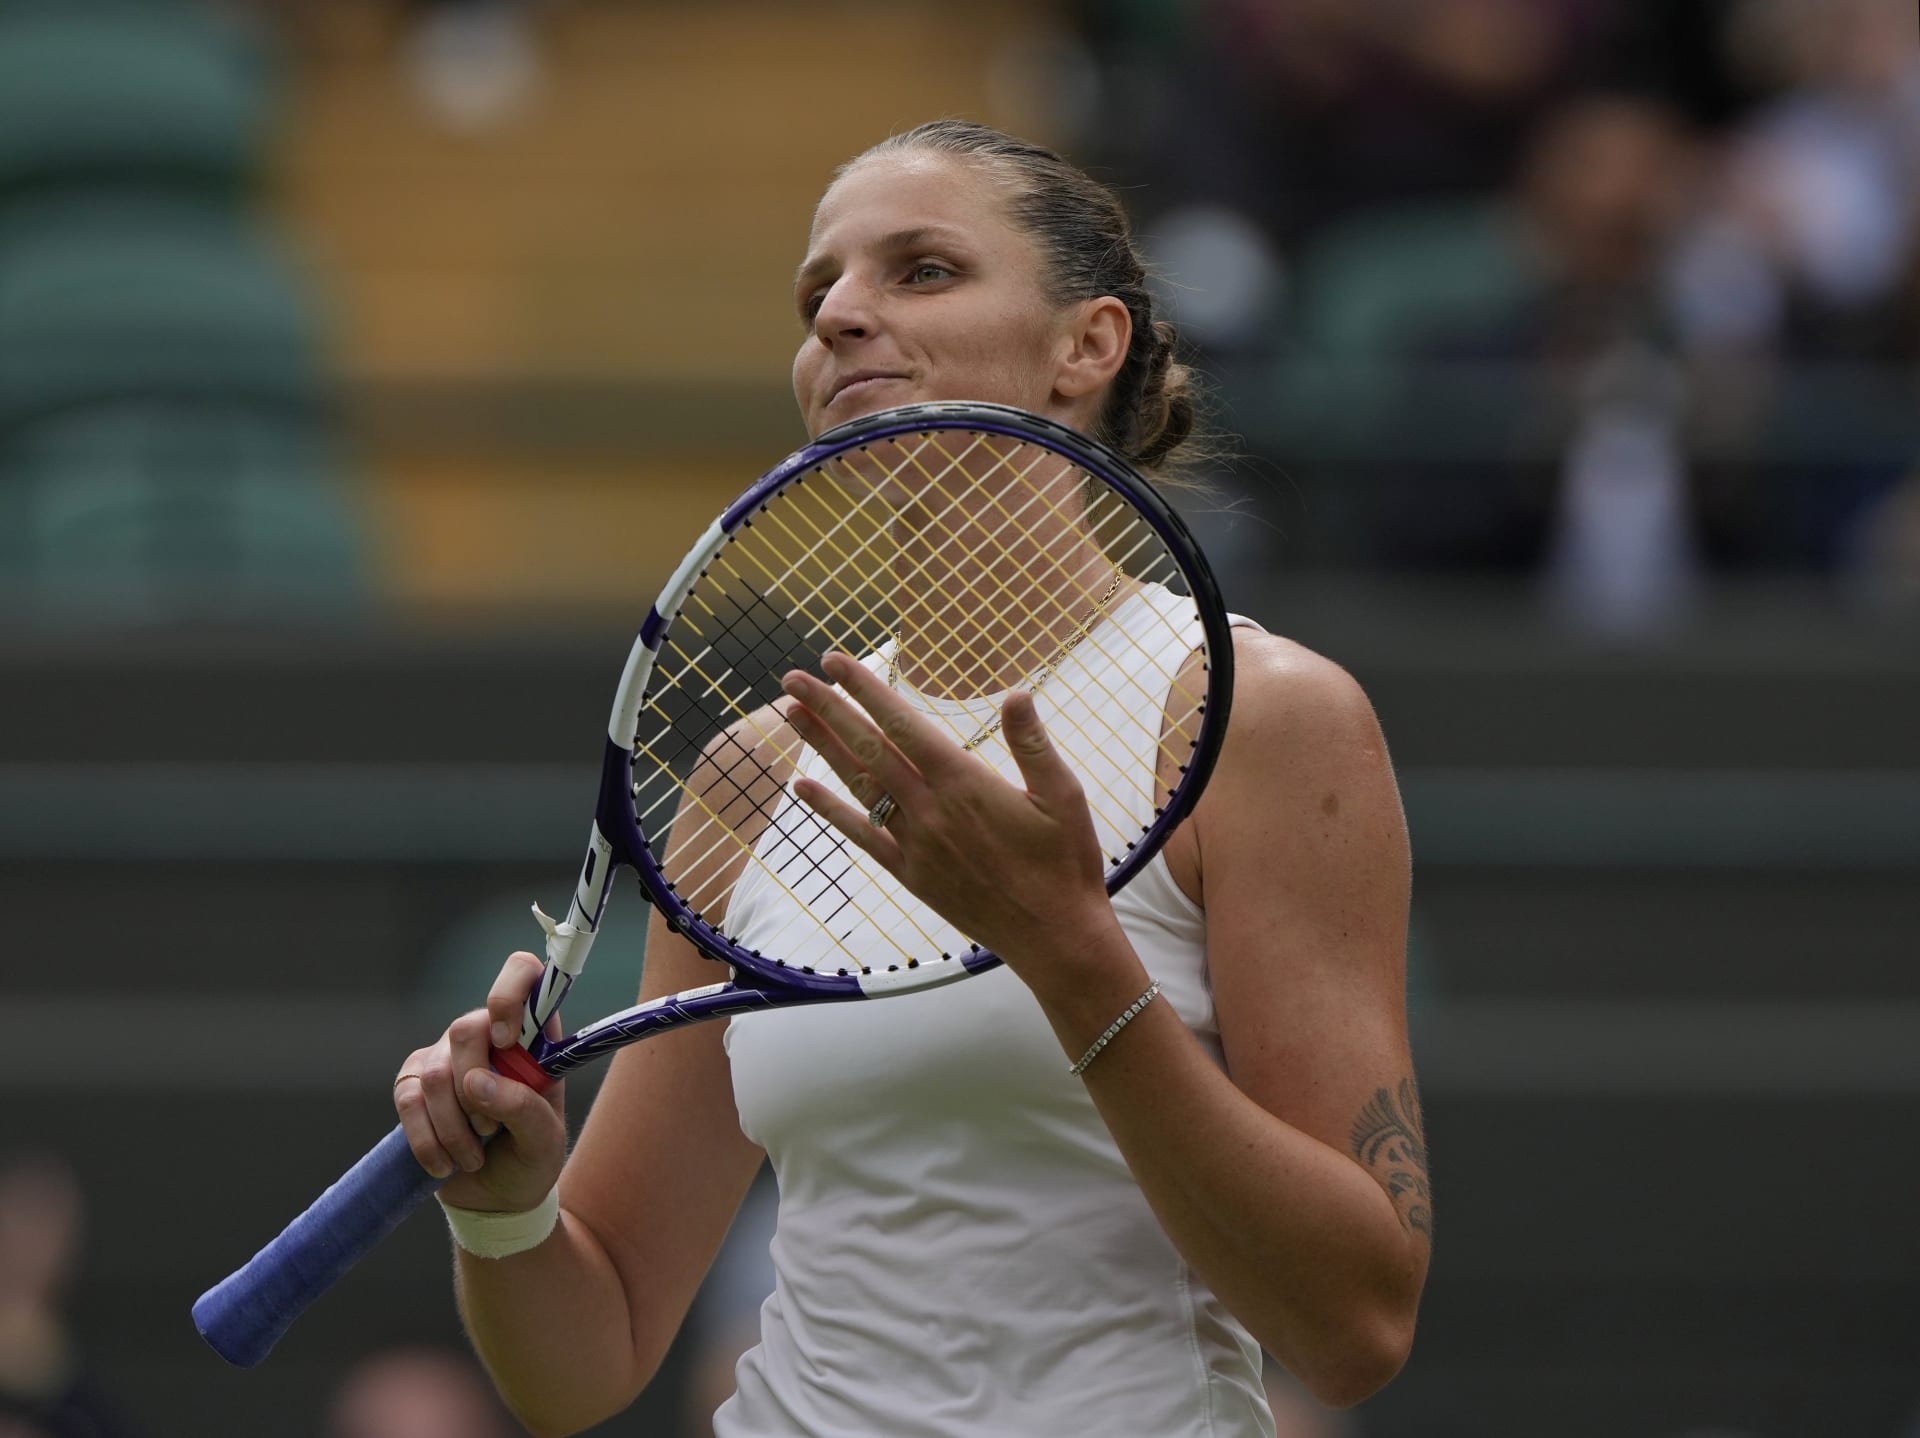 Česká tenistka Karolína Plíšková se raduje z vítězství nad Švýcarkou Viktorijí Golubicovou